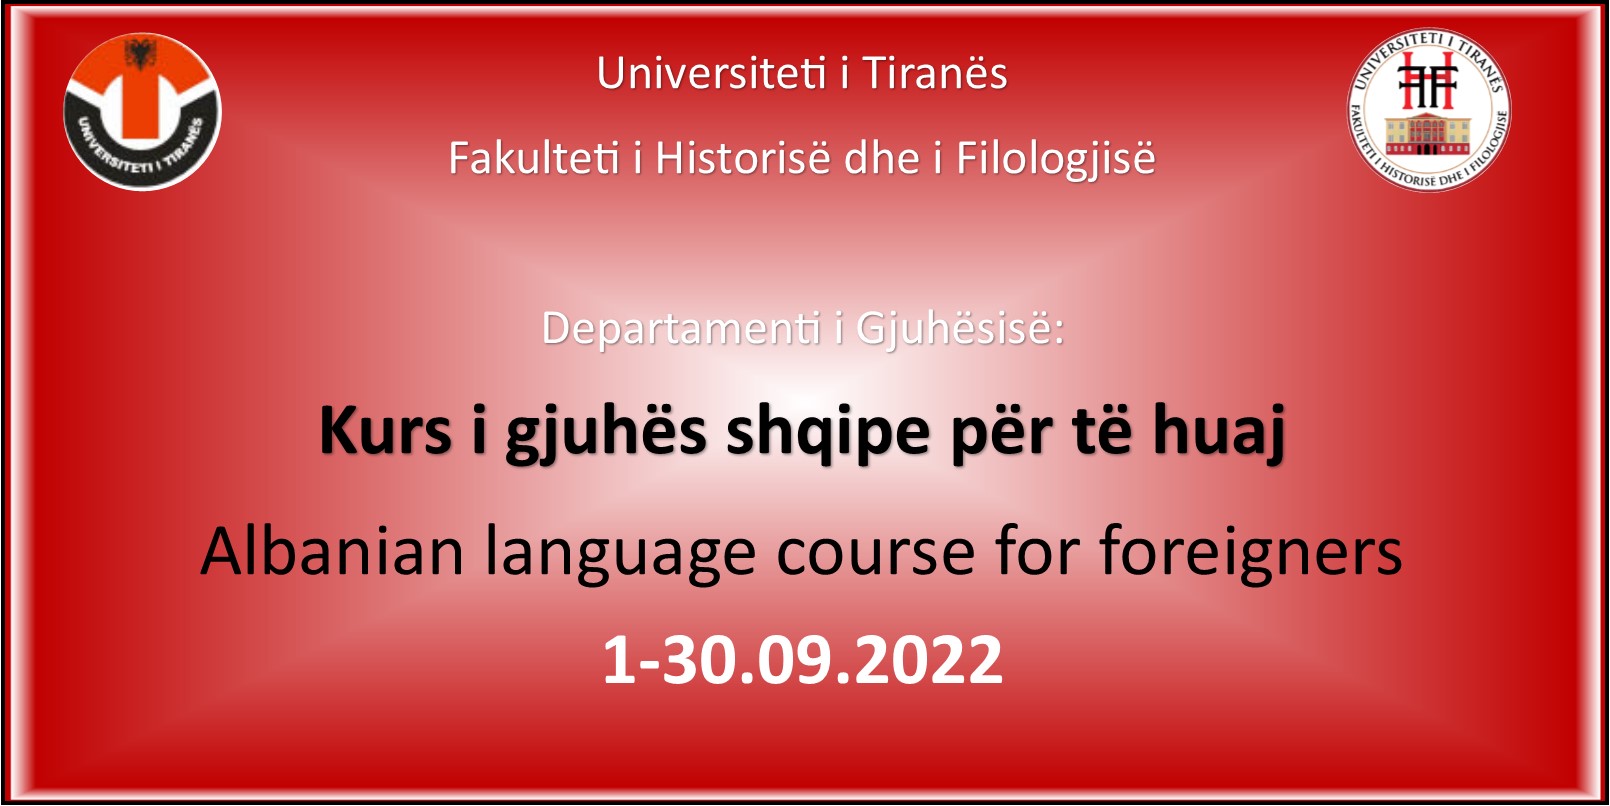 Departamenti i Gjuhësisë: 1-30 shtator 2022, do të zhvillohet shkolla verore “Kurs i Gjuhës shqipe për të huaj”.